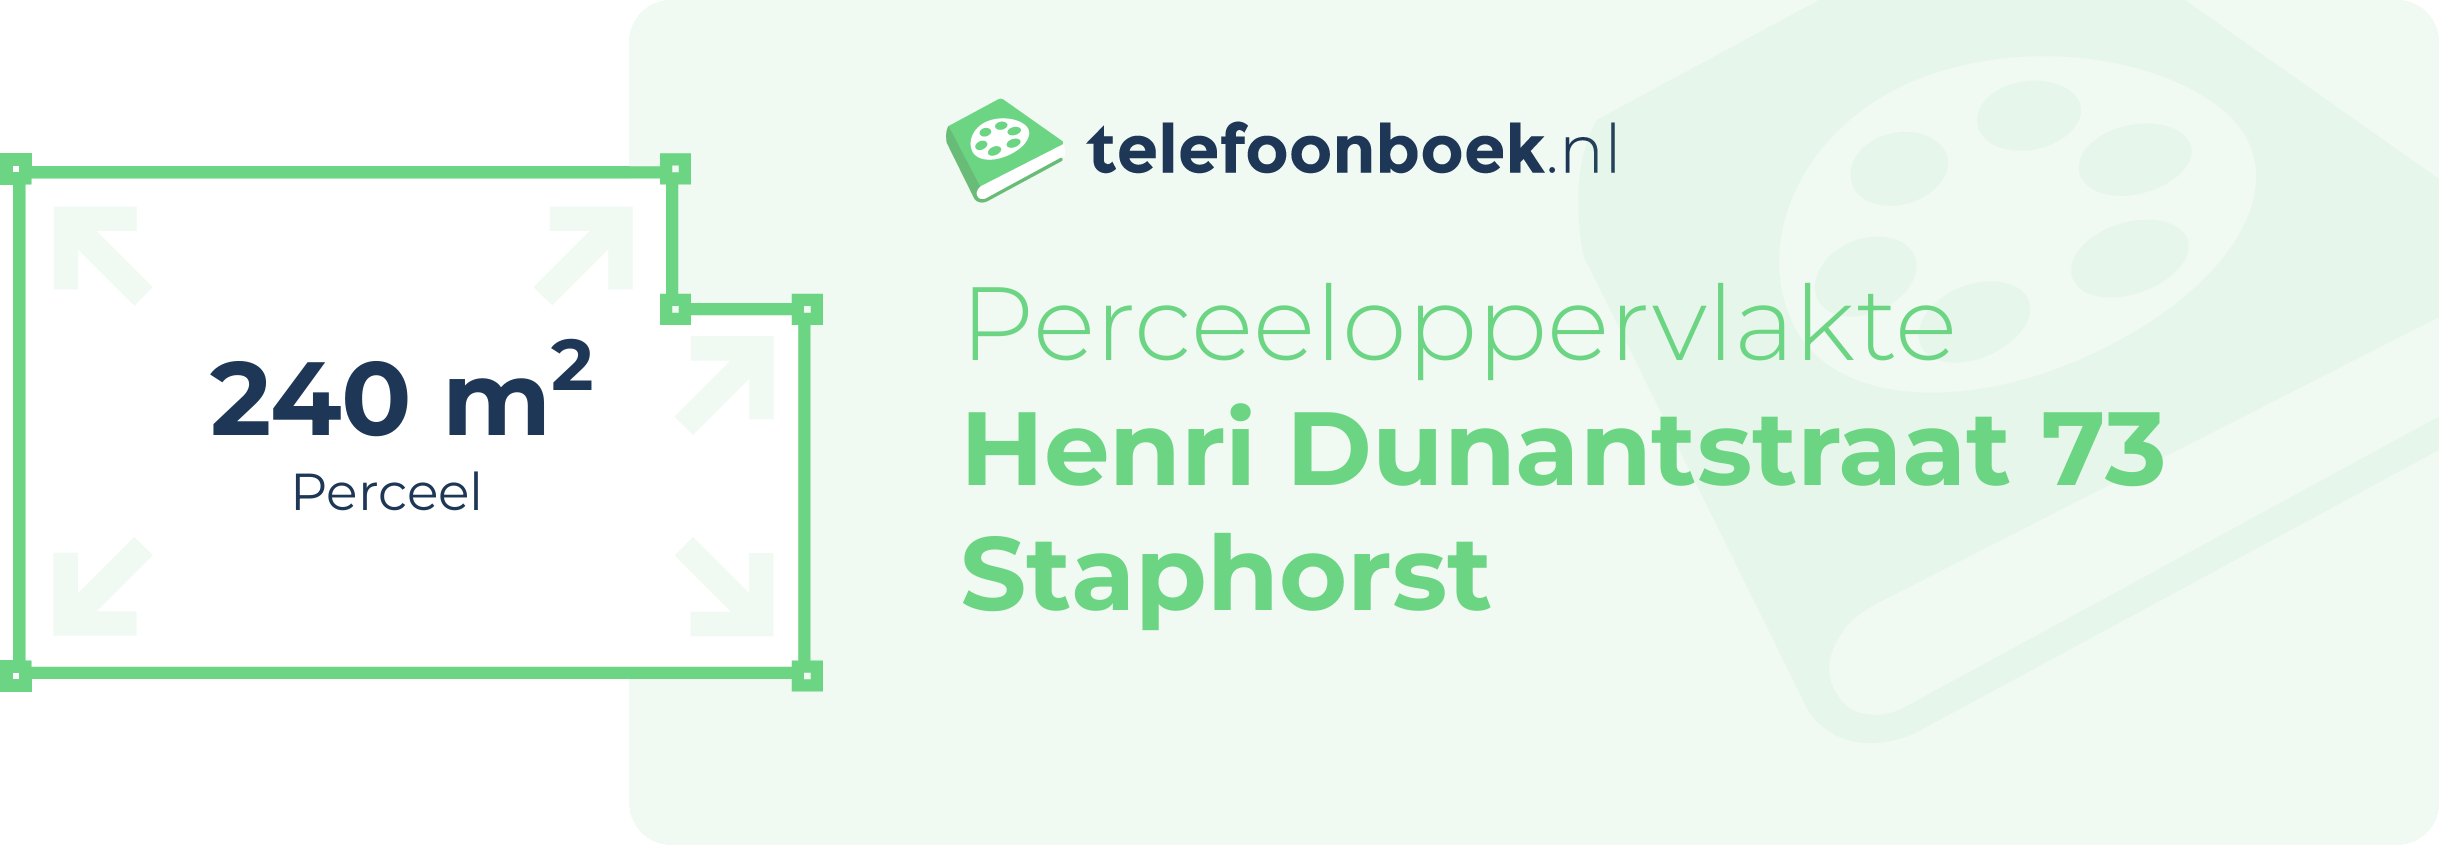 Perceeloppervlakte Henri Dunantstraat 73 Staphorst